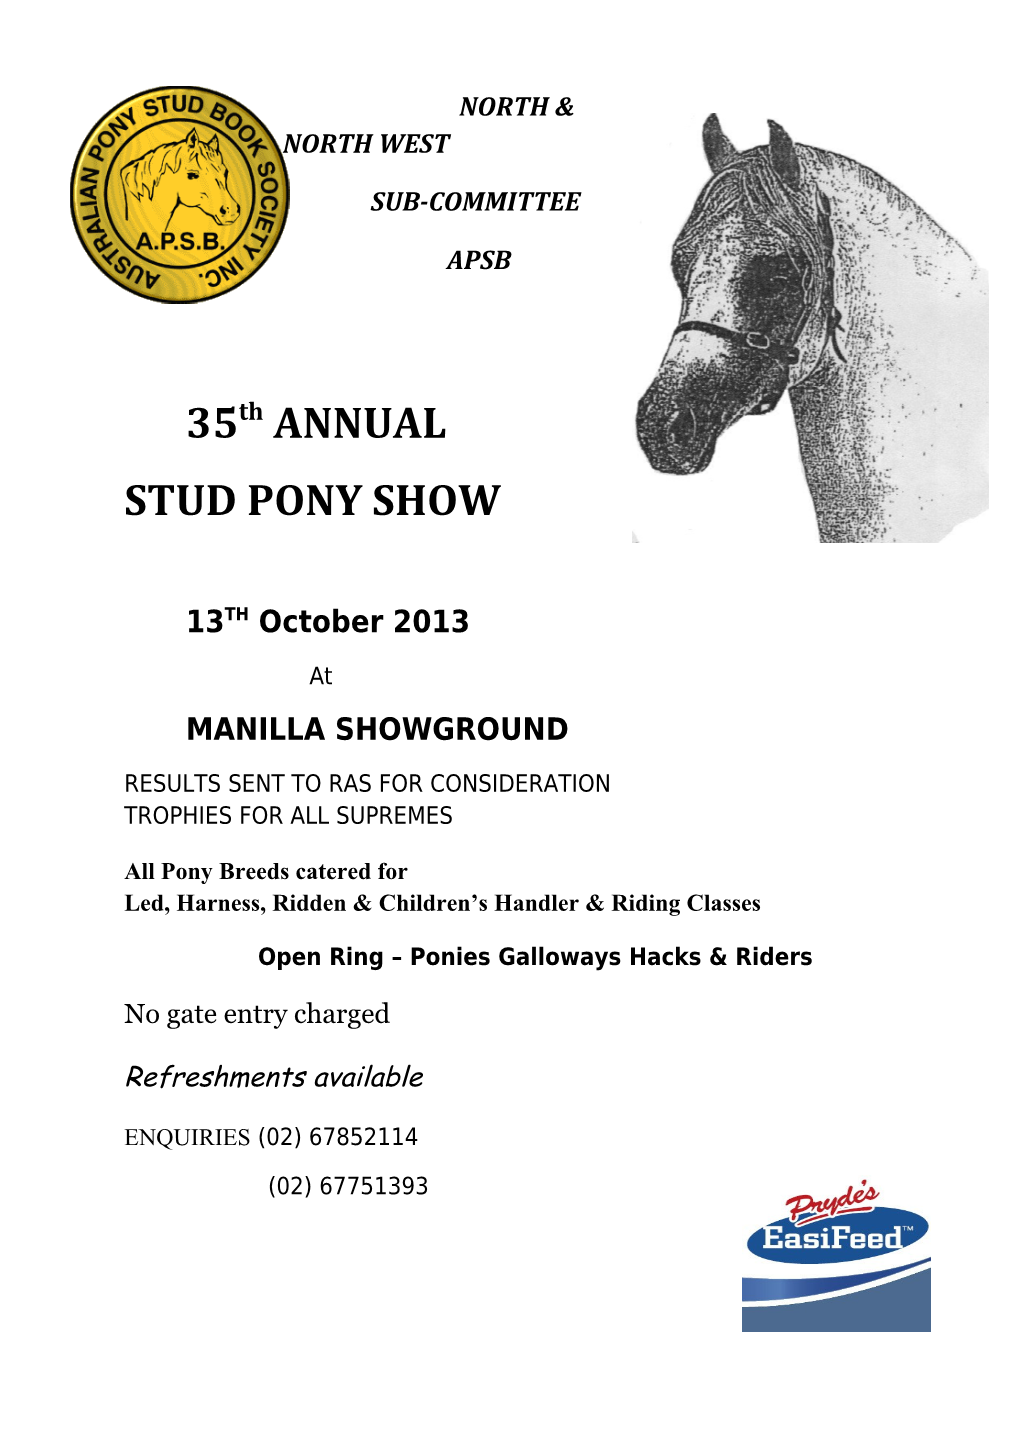 Manilla Showground